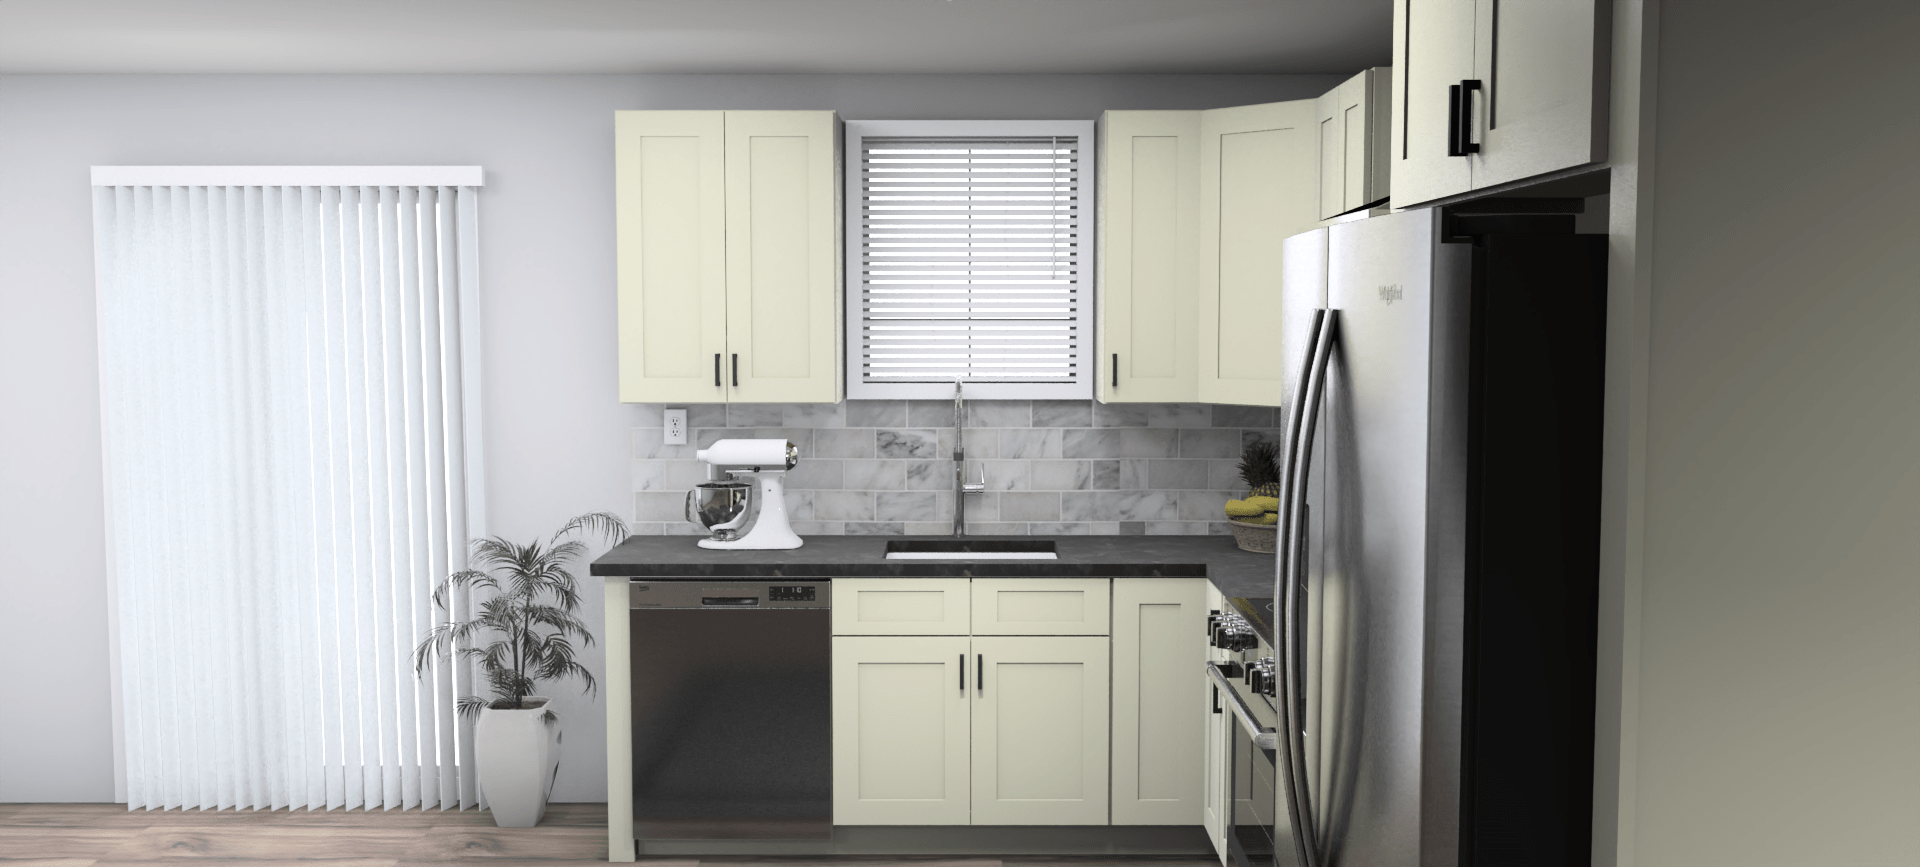 Fabuwood Allure Galaxy Linen 8 x 12 L Shaped Kitchen Side Layout Photo